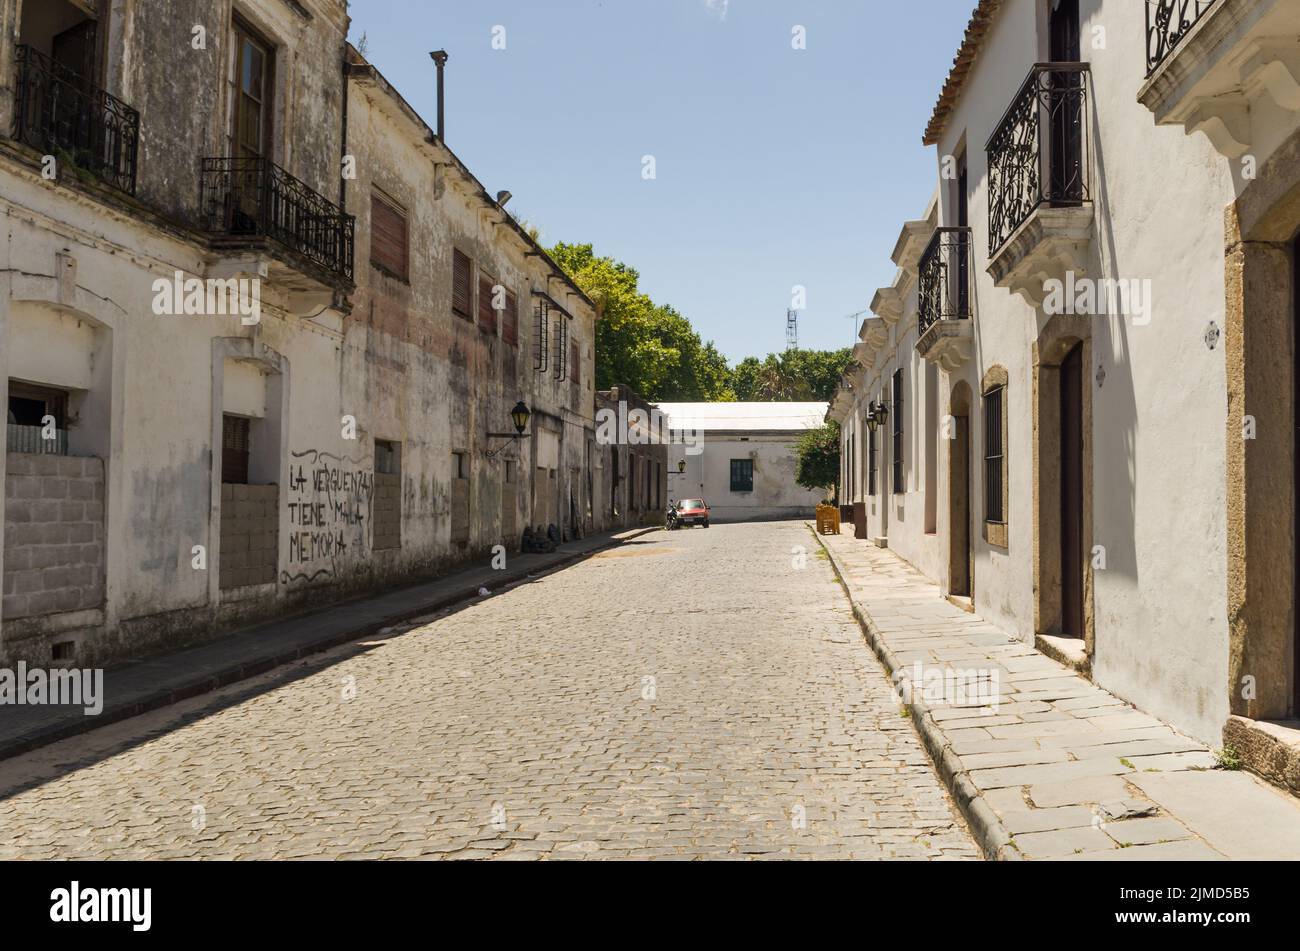 Colonia del Sacramento, Uruguay - Dezember 26, 2015: Portuguese colonial architecture and ancient co Stock Photo